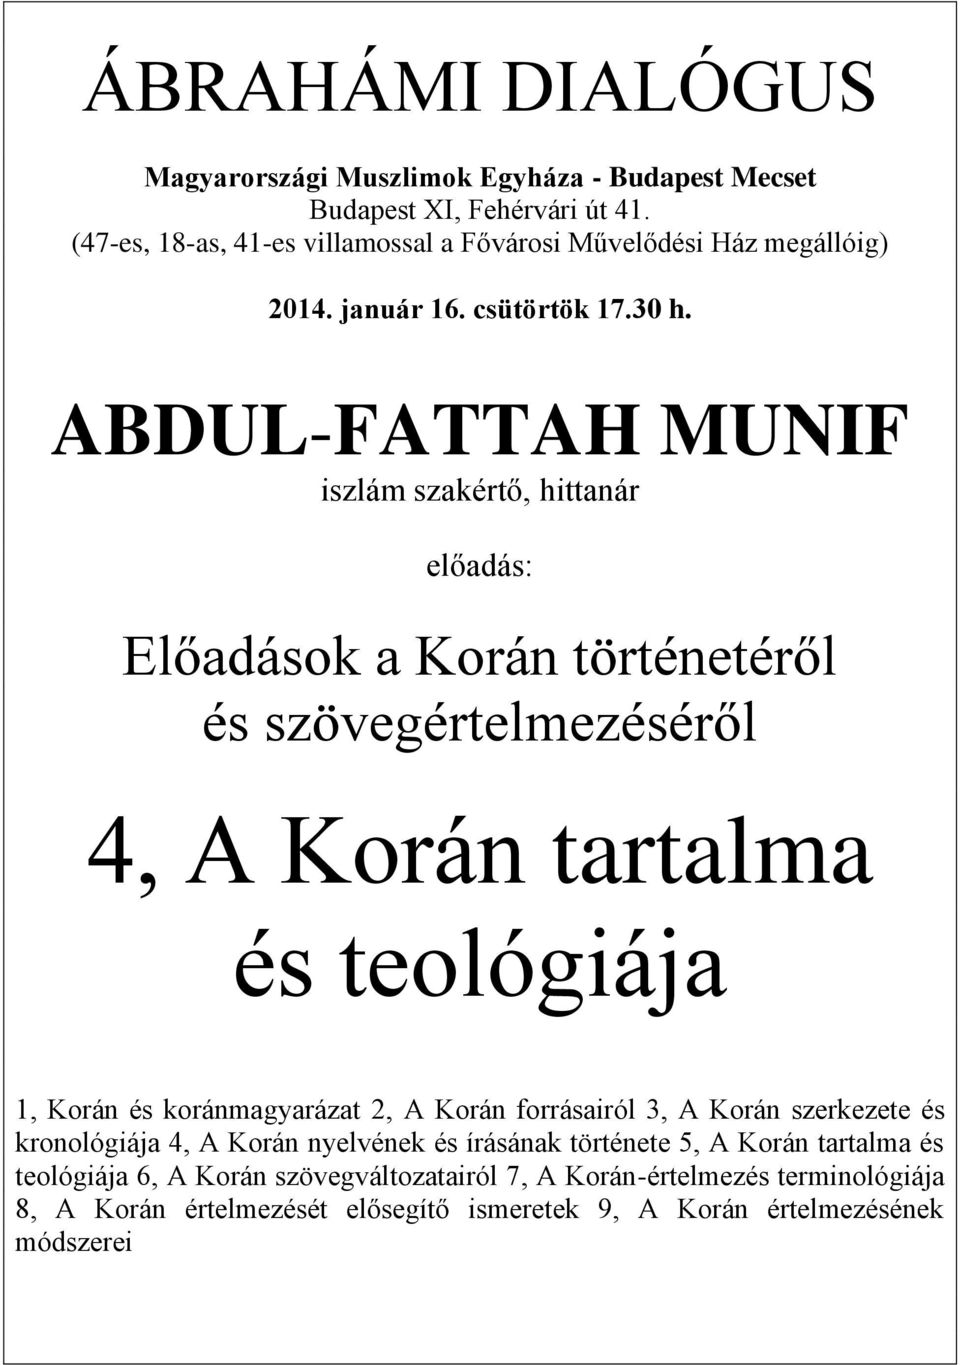 ABDUL-FATTAH MUNIF iszlám szakértő, hittanár előadás: Előadások a Korán történetéről és szövegértelmezéséről 4, A Korán tartalma és teológiája 1, Korán és